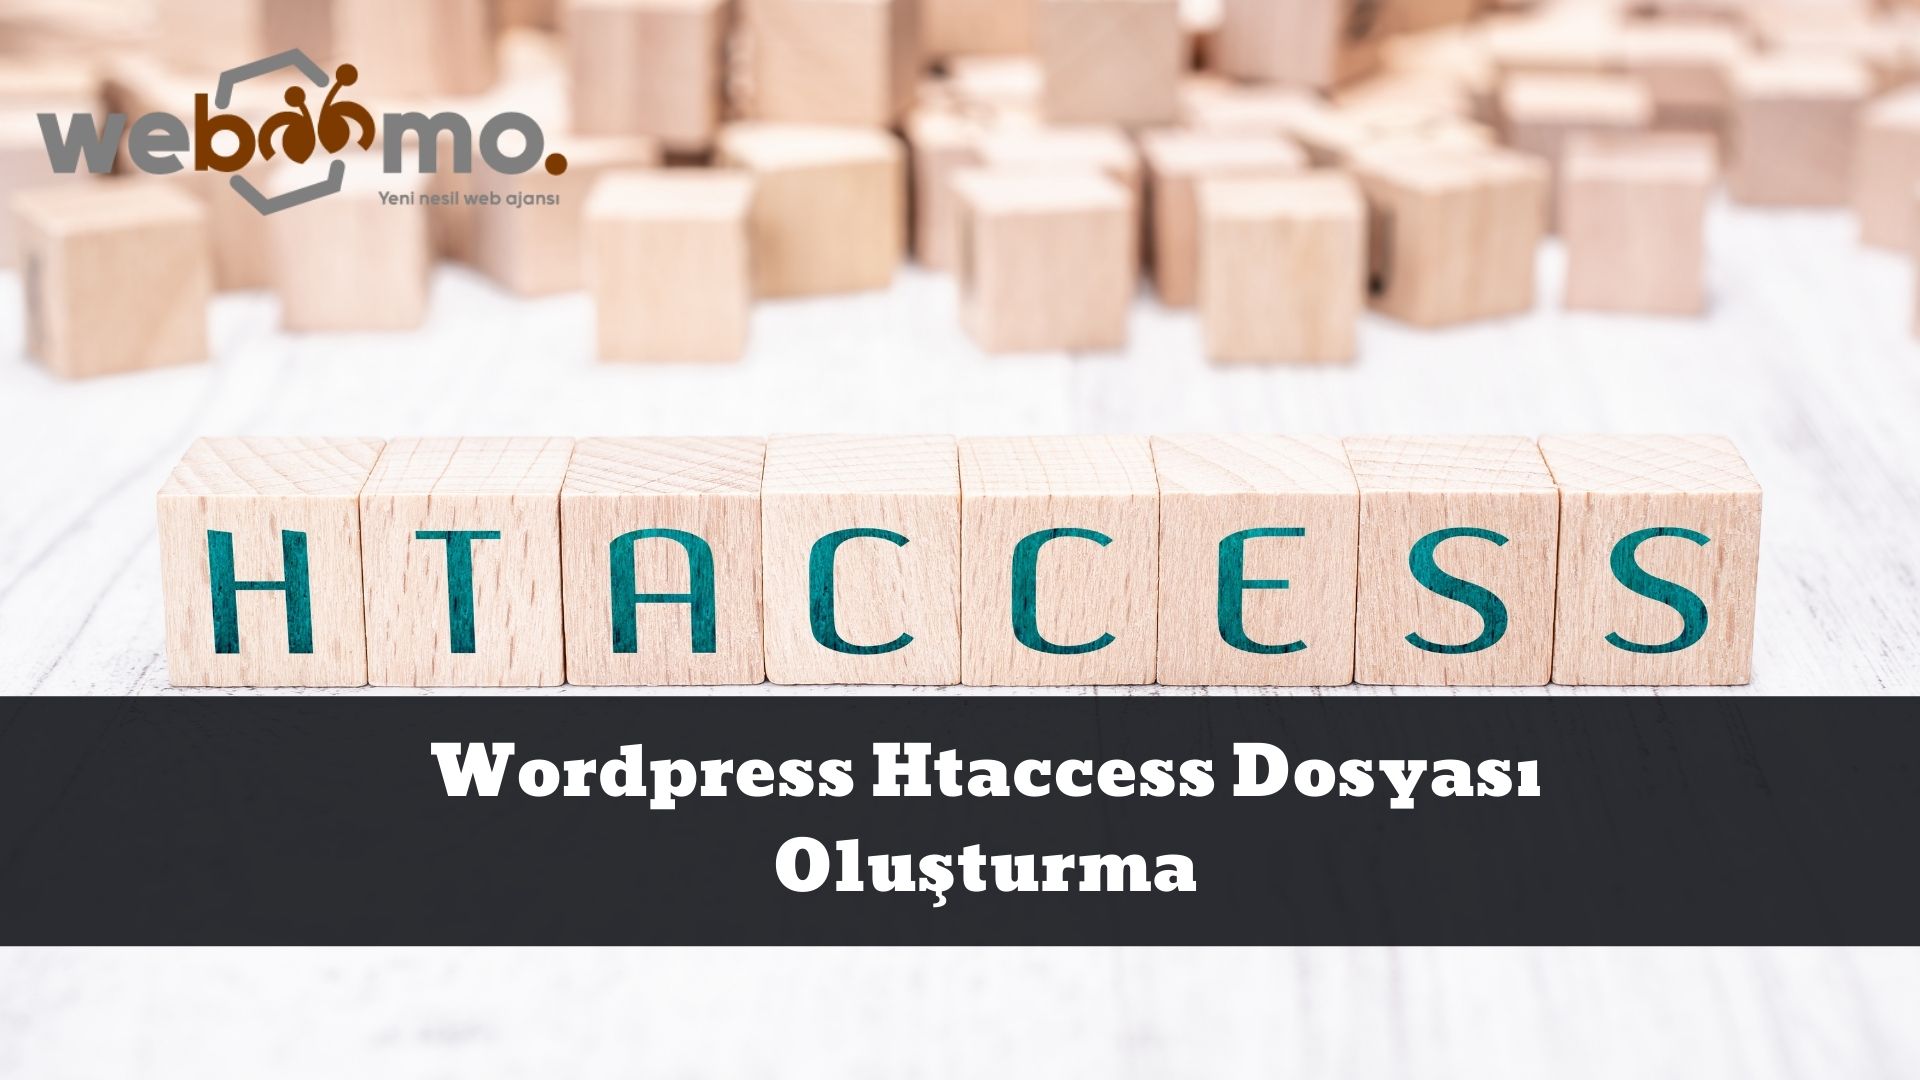 Wordpress Htaccess Dosyası Oluşturma